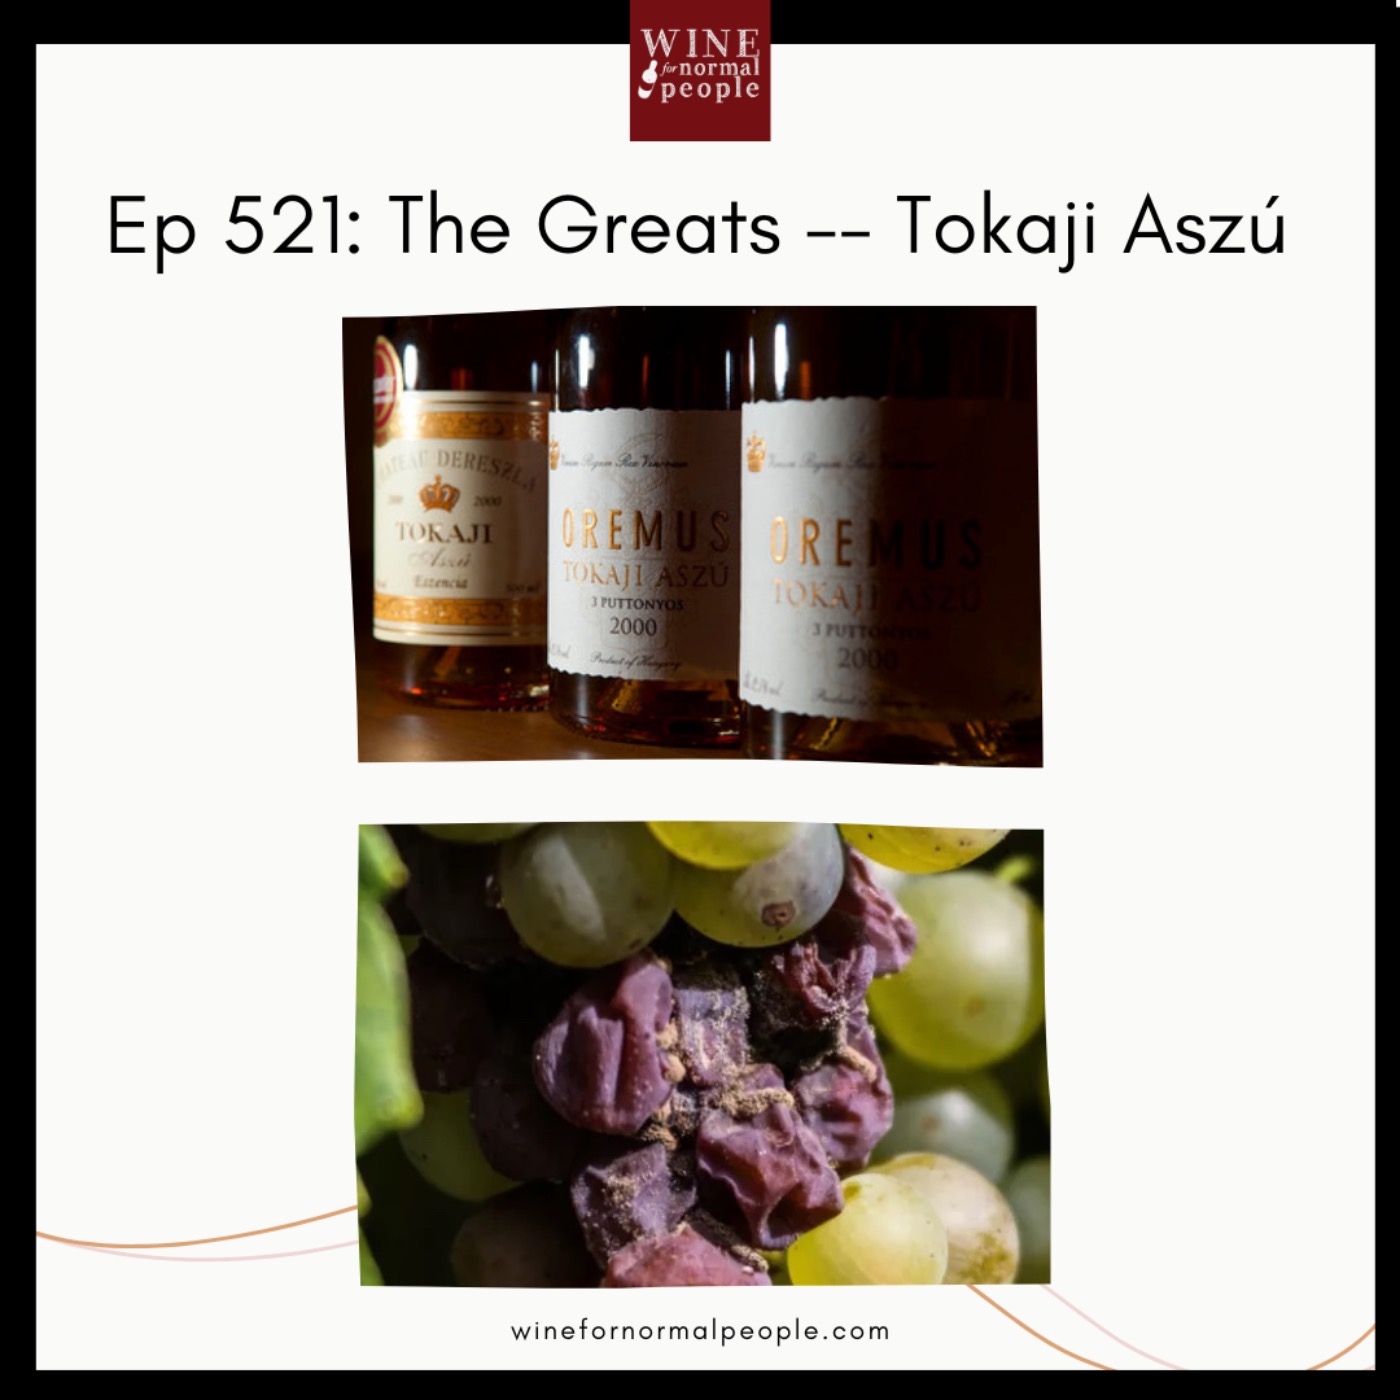 Ep 521: The Greats -- Tokaji Aszú